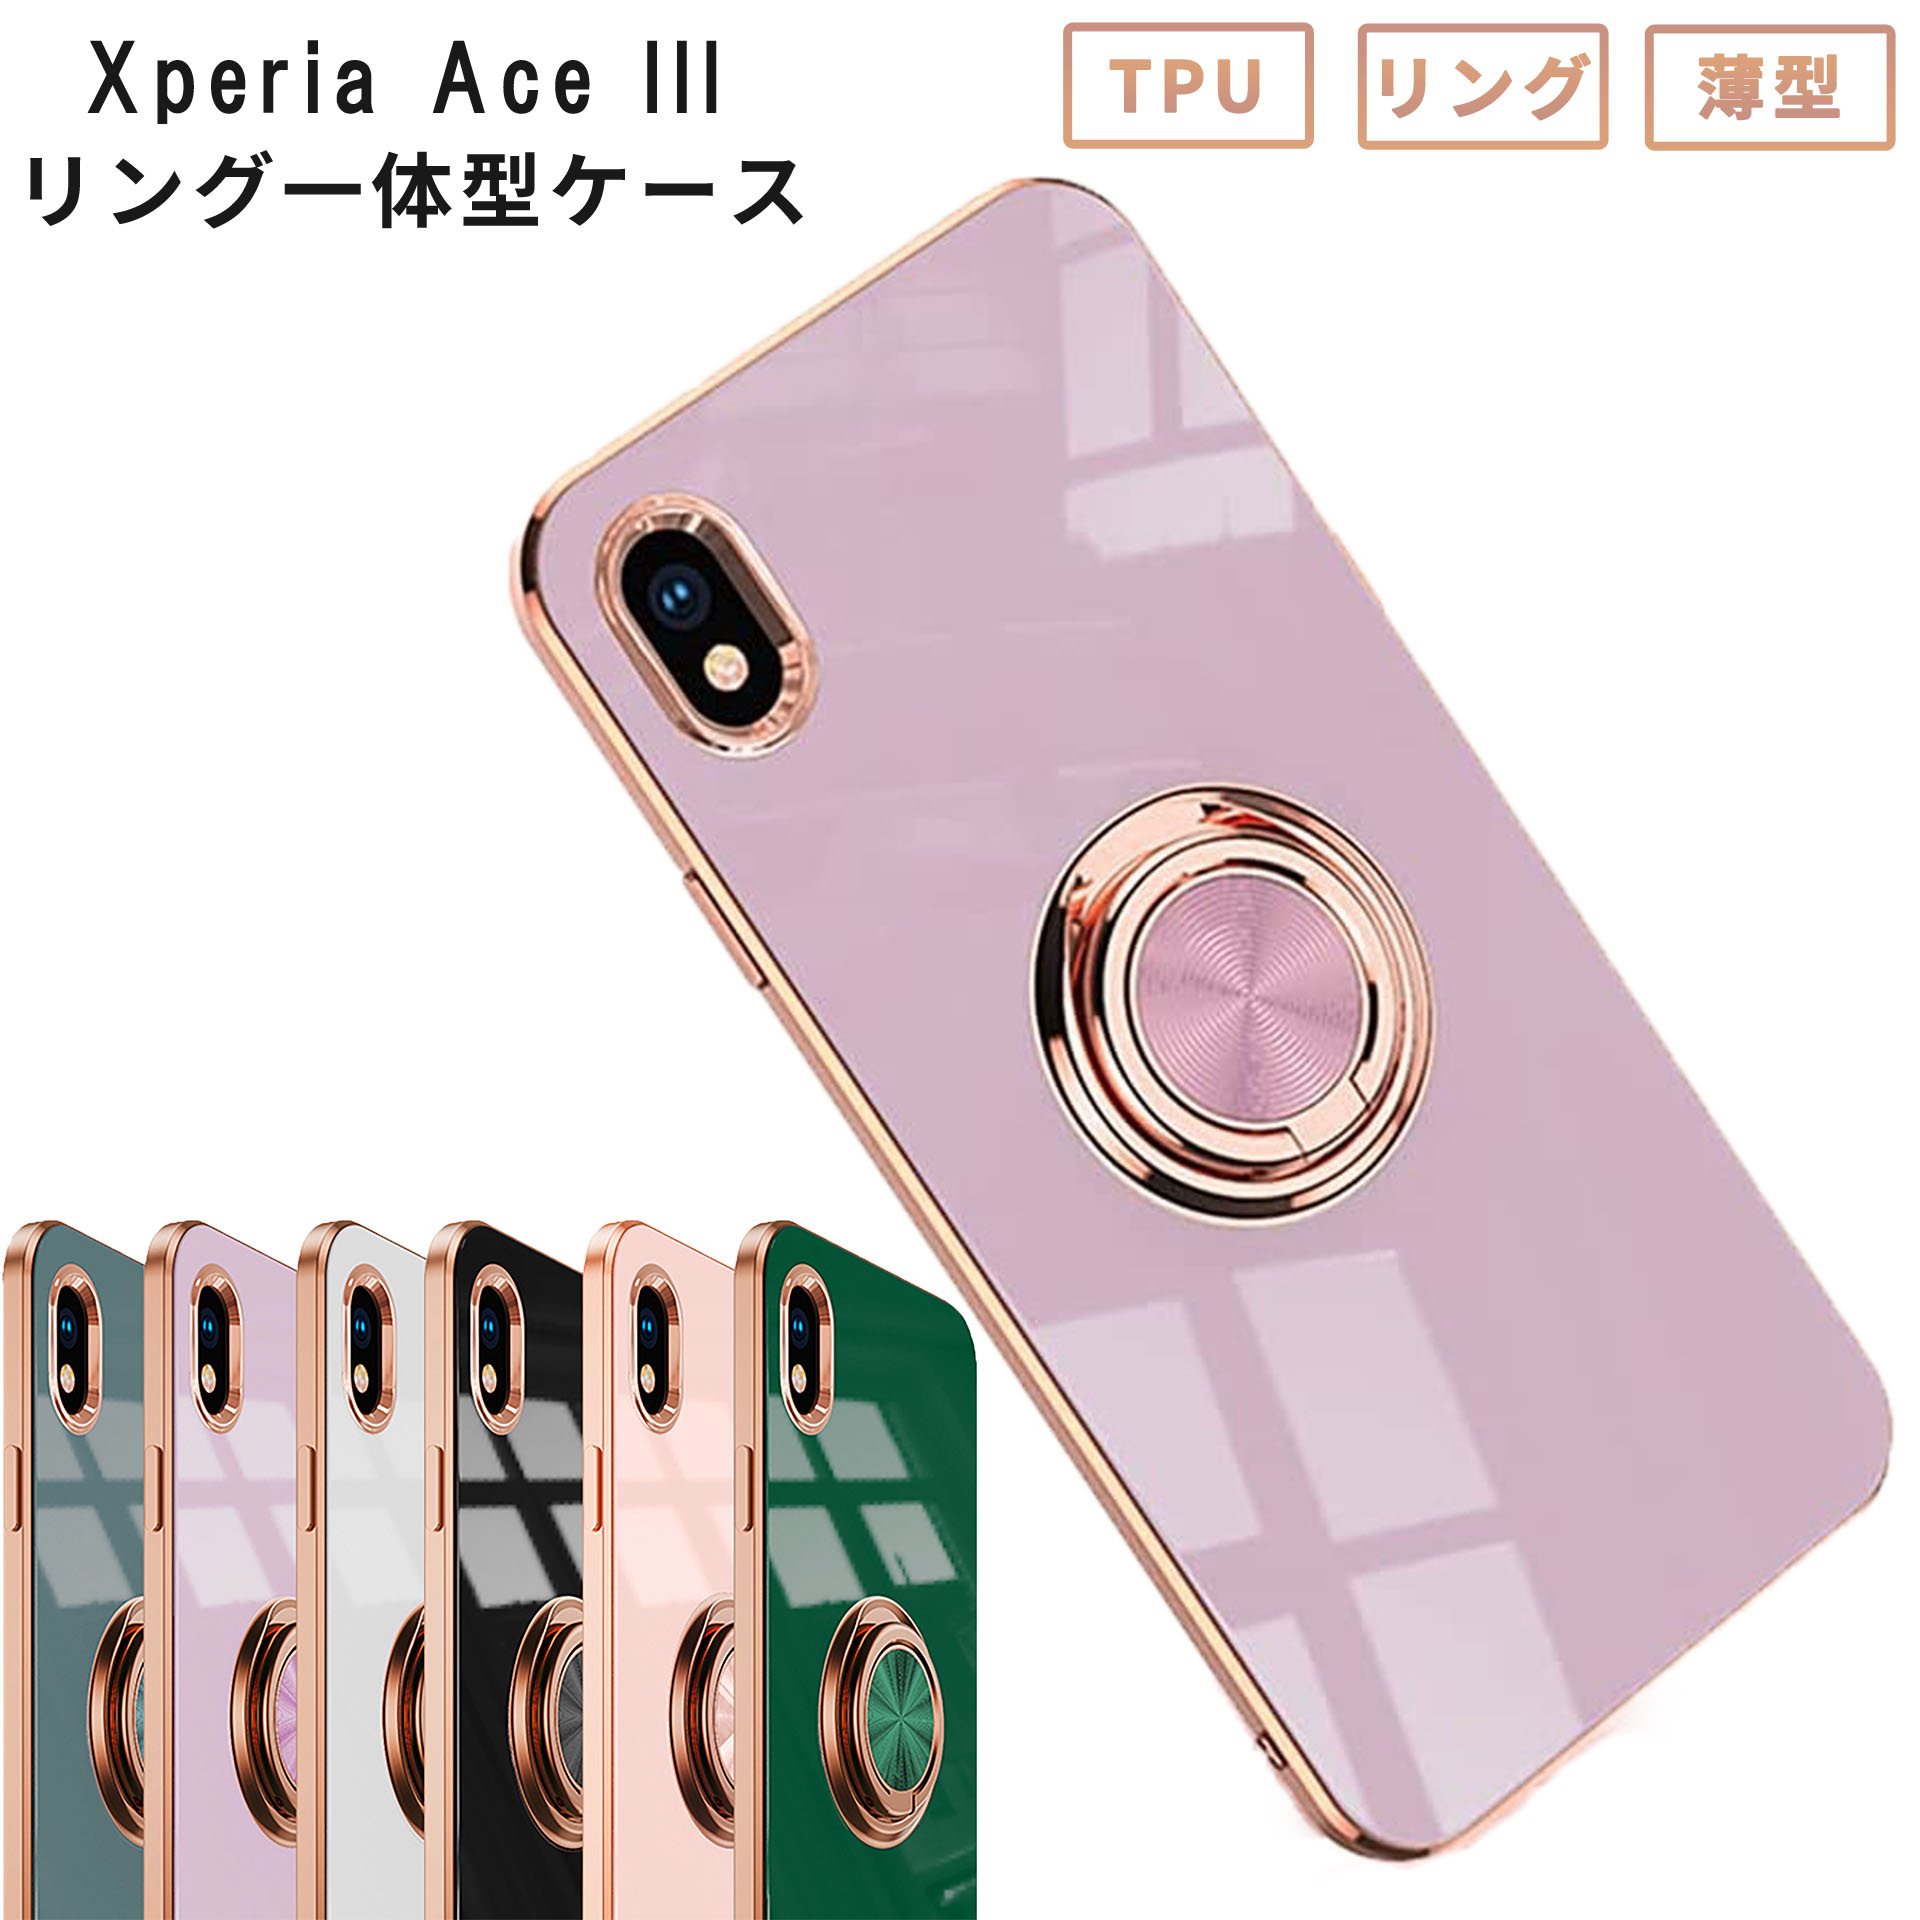 Xperia エース マーク3 ピンク カバー 携帯カバー シリコン - 通販